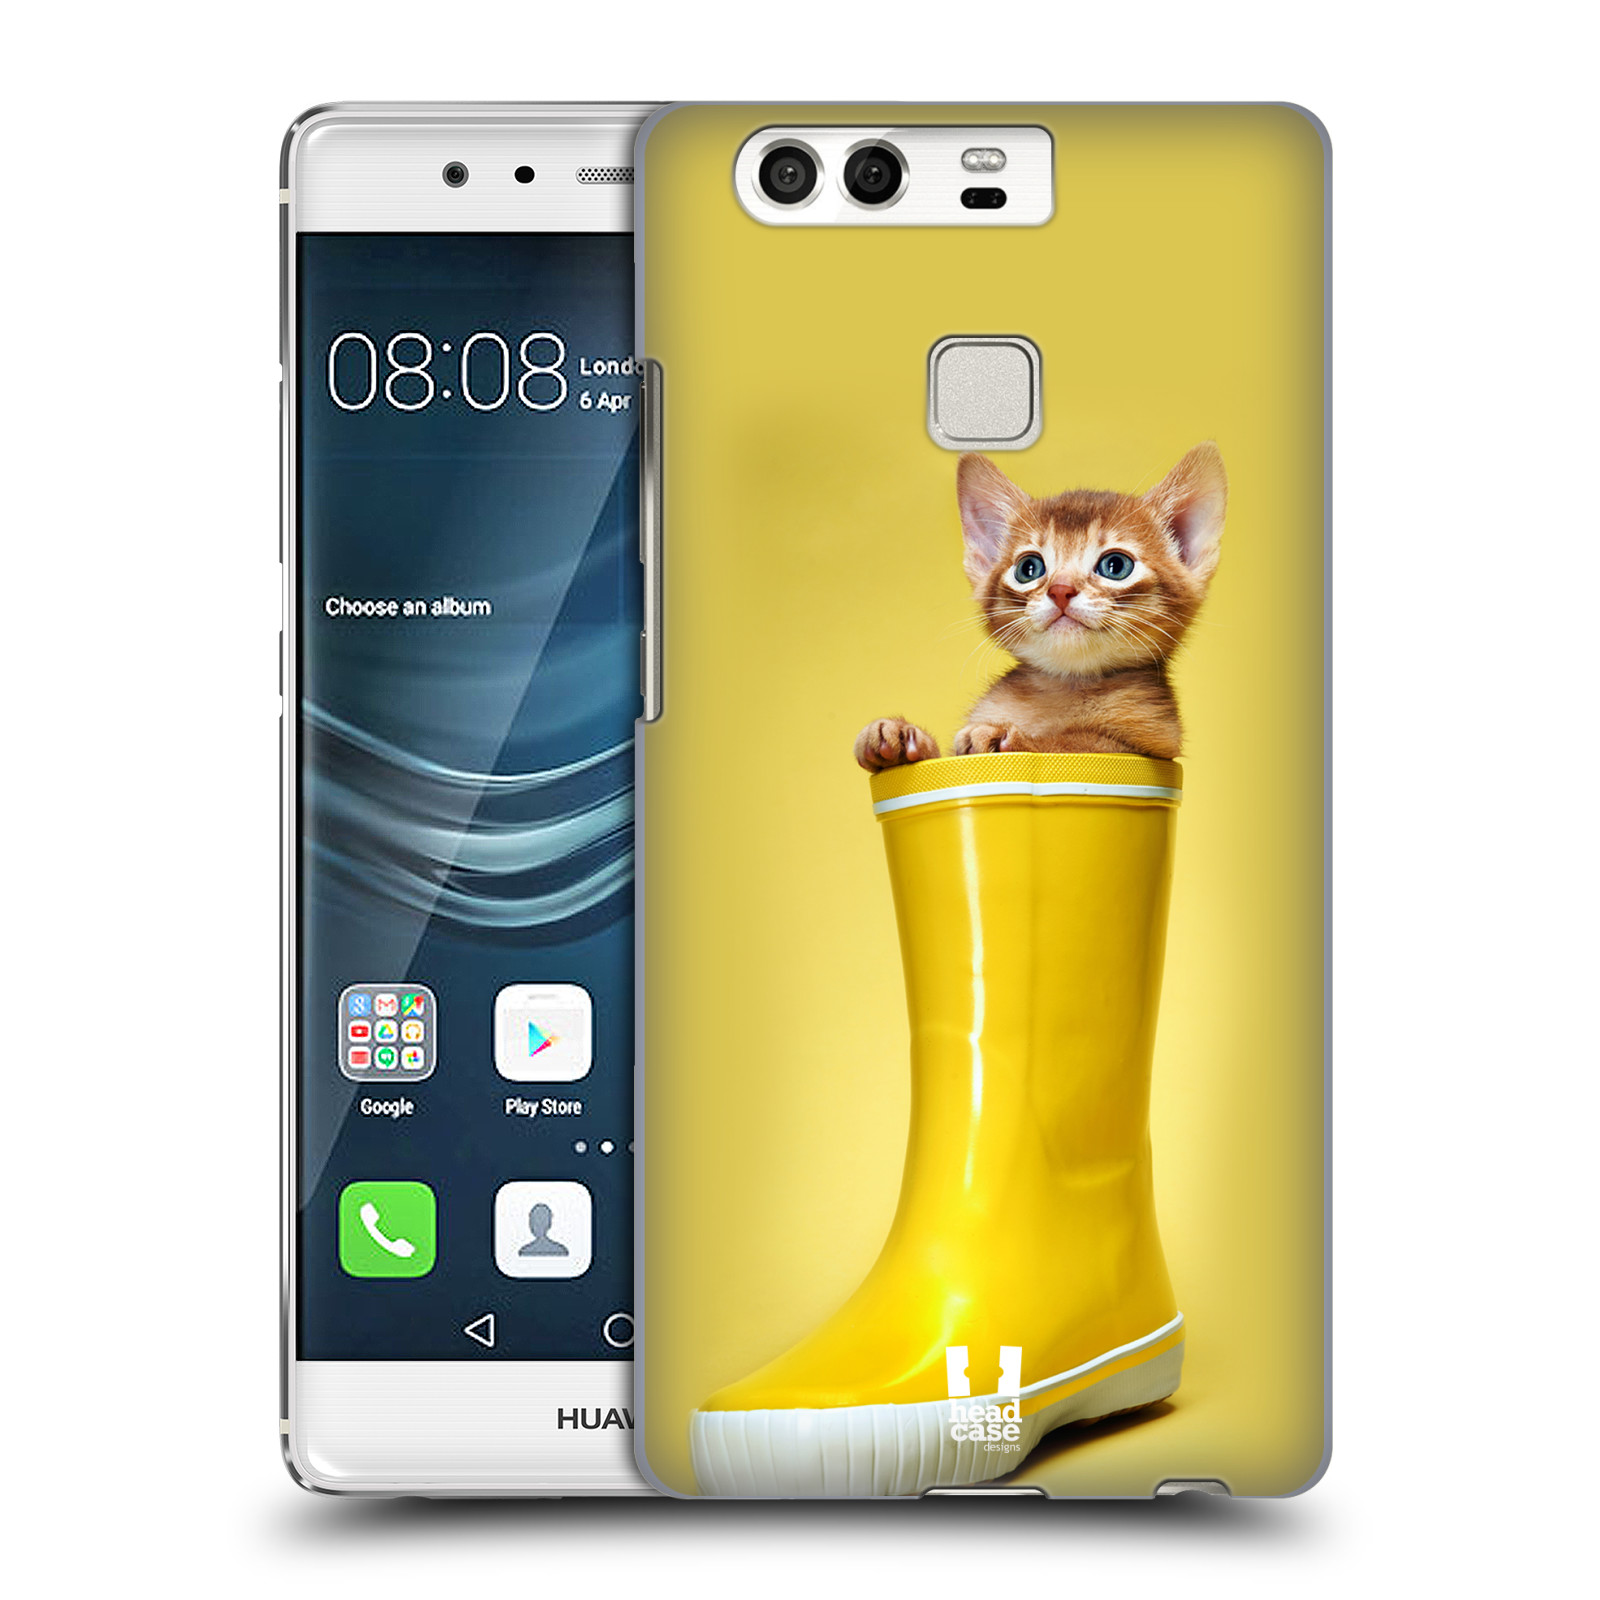 HEAD CASE plastový obal na mobil Huawei P9 / P9 DUAL SIM vzor Legrační zvířátka kotě v botě žlutá